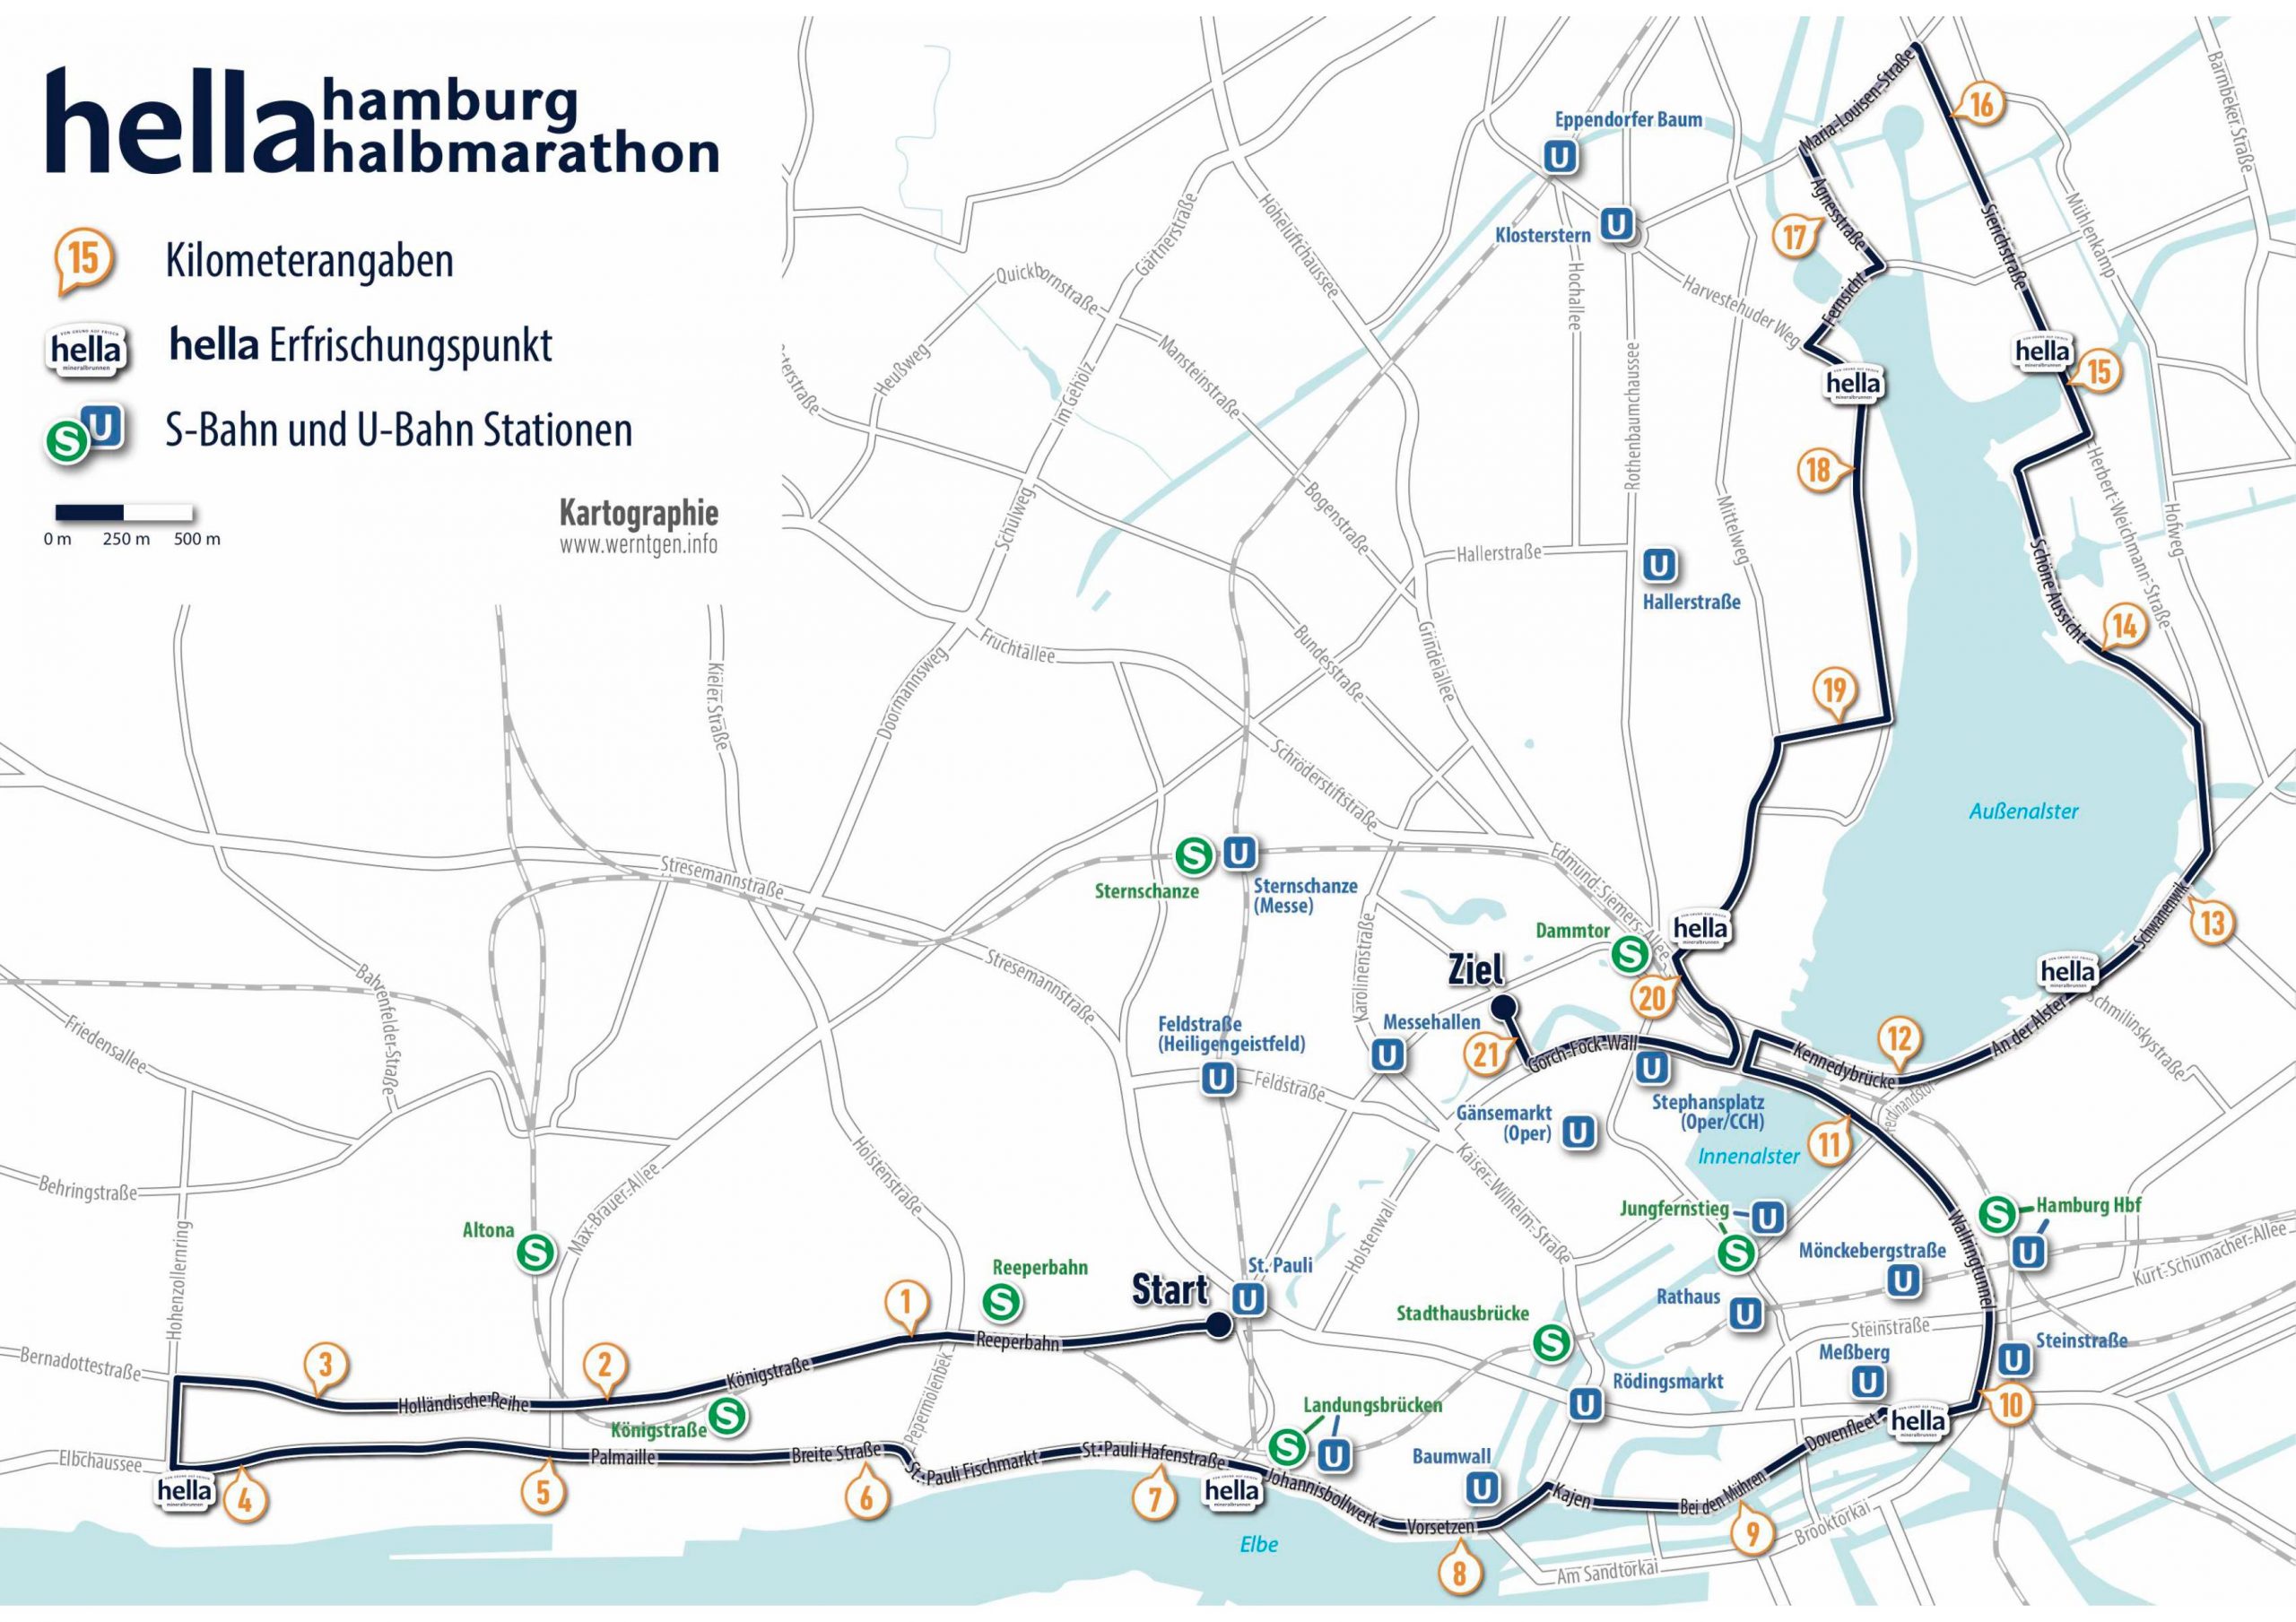 Läufer*innen auf einer Straße in Hamburg beim Hella Halbmarathon 2019